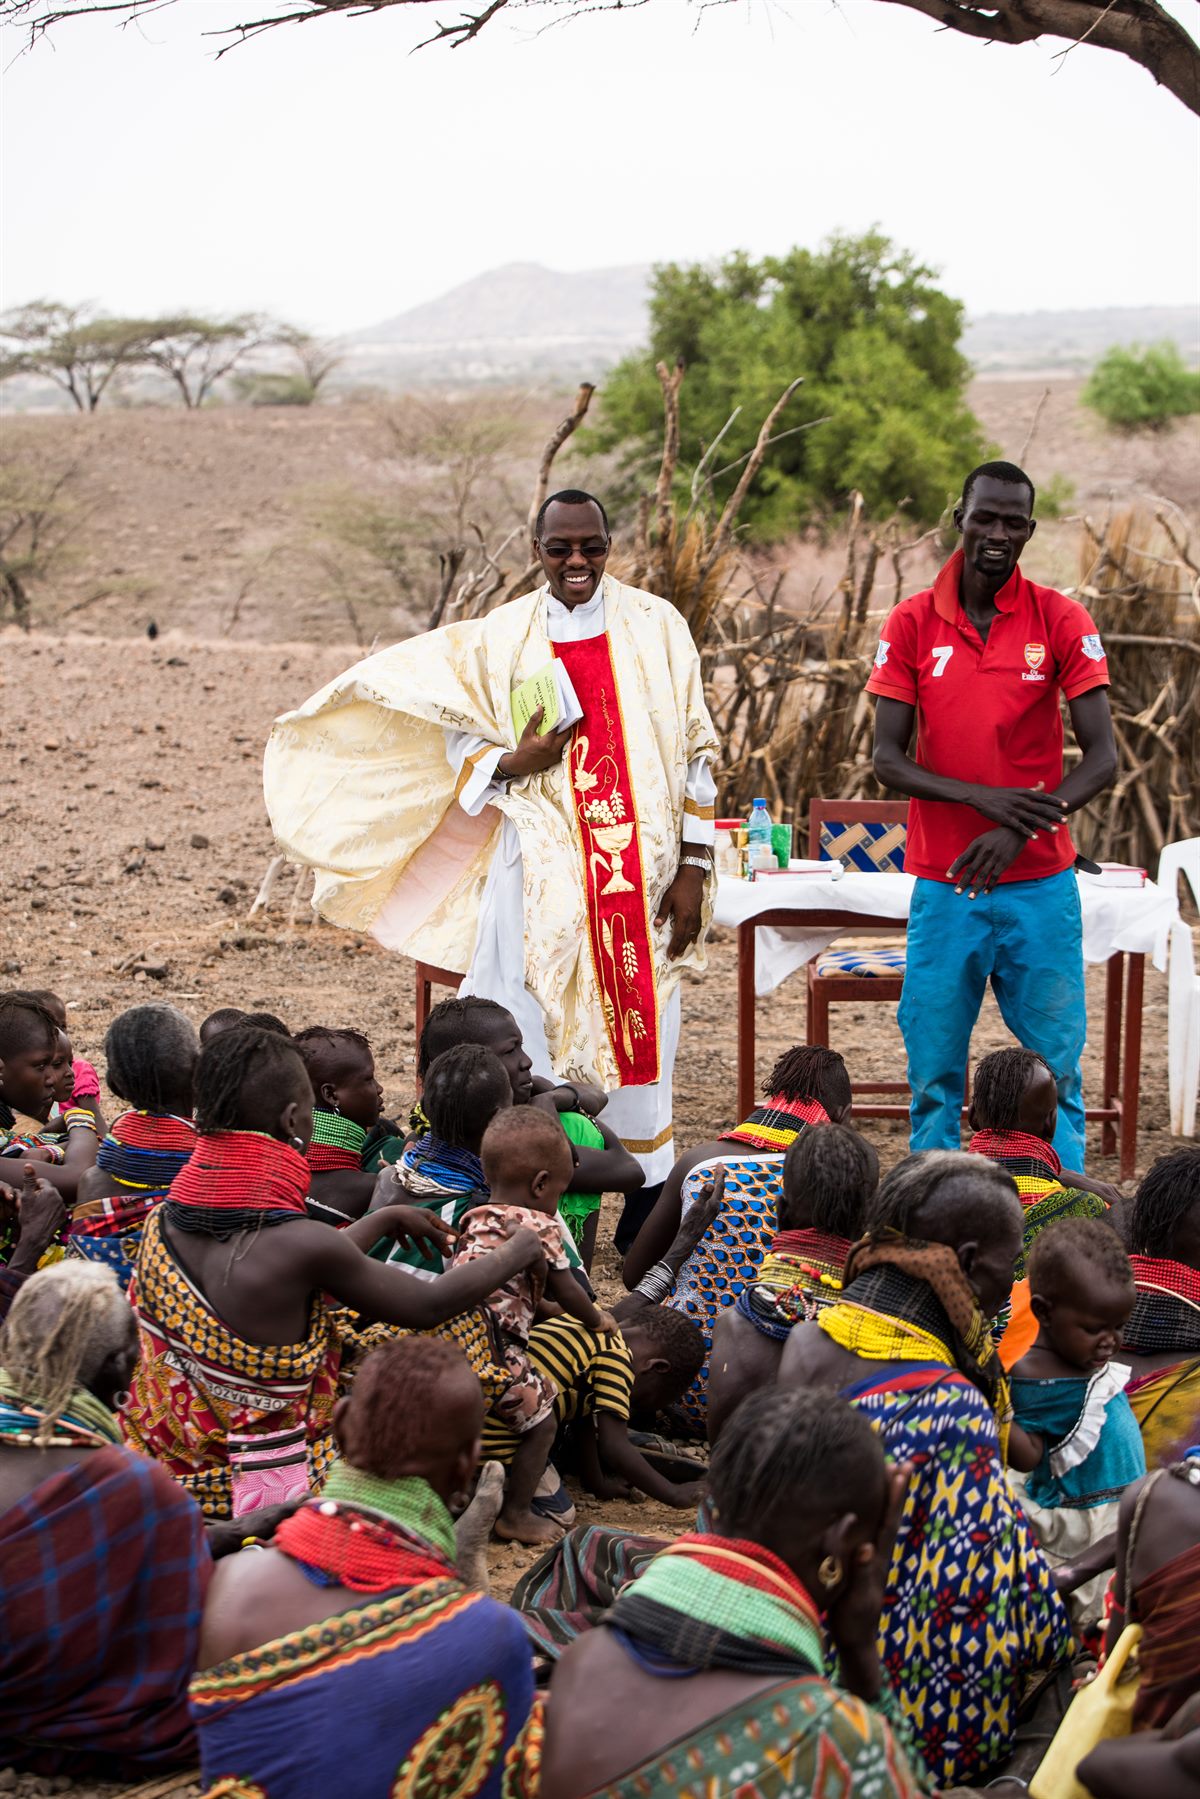 Father Albert feiert eine Messe mit Turkana-Nomaden in Kenia